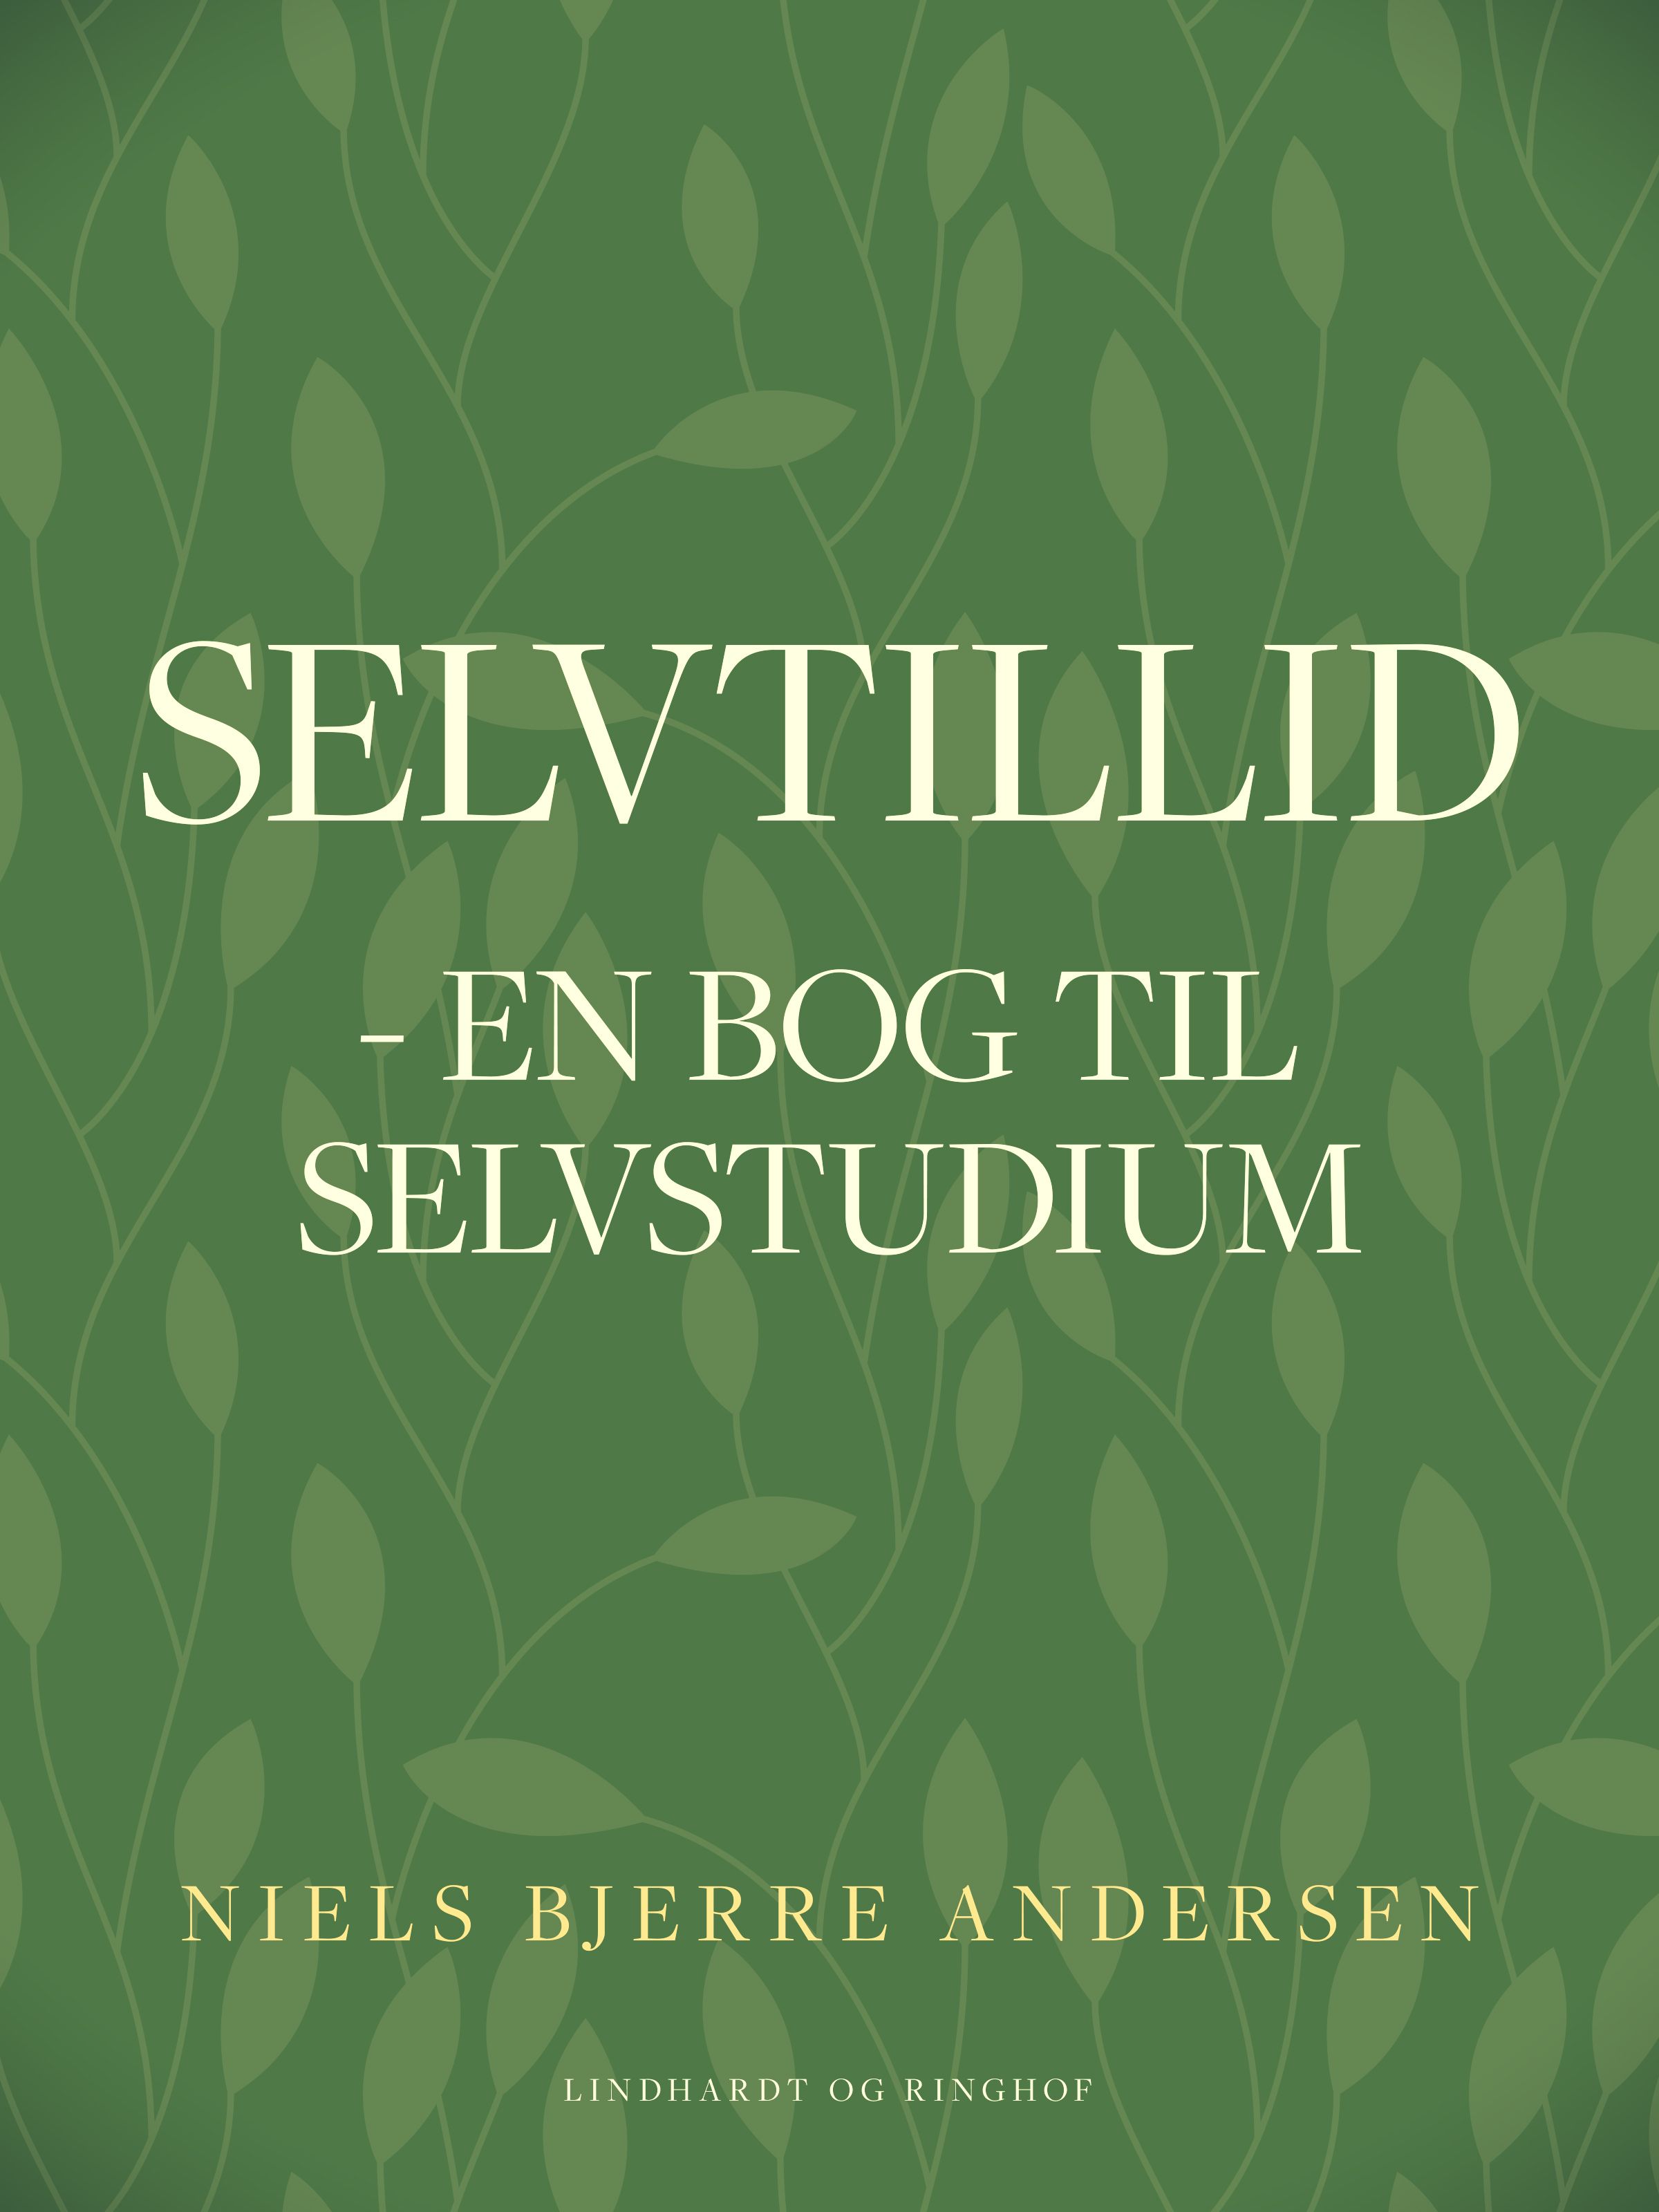 Selvtillid: en bog til selvstudium, e-bog af Niels Bjerre Andersen